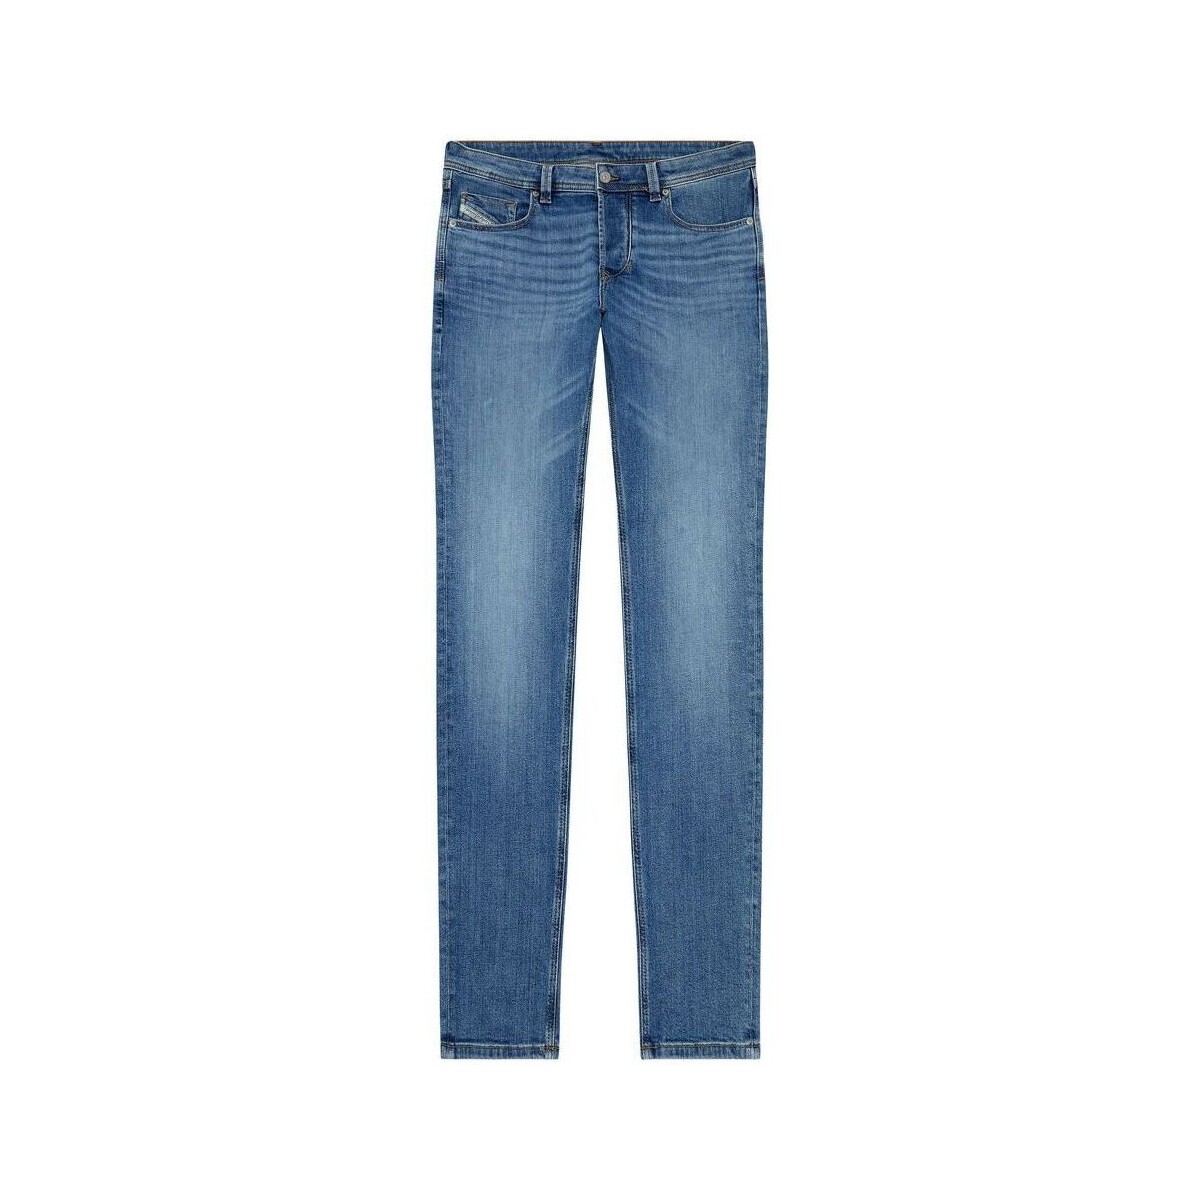 Abbigliamento Uomo Jeans Diesel 2023 D-FINITIVE 0KIAL-01 Blu